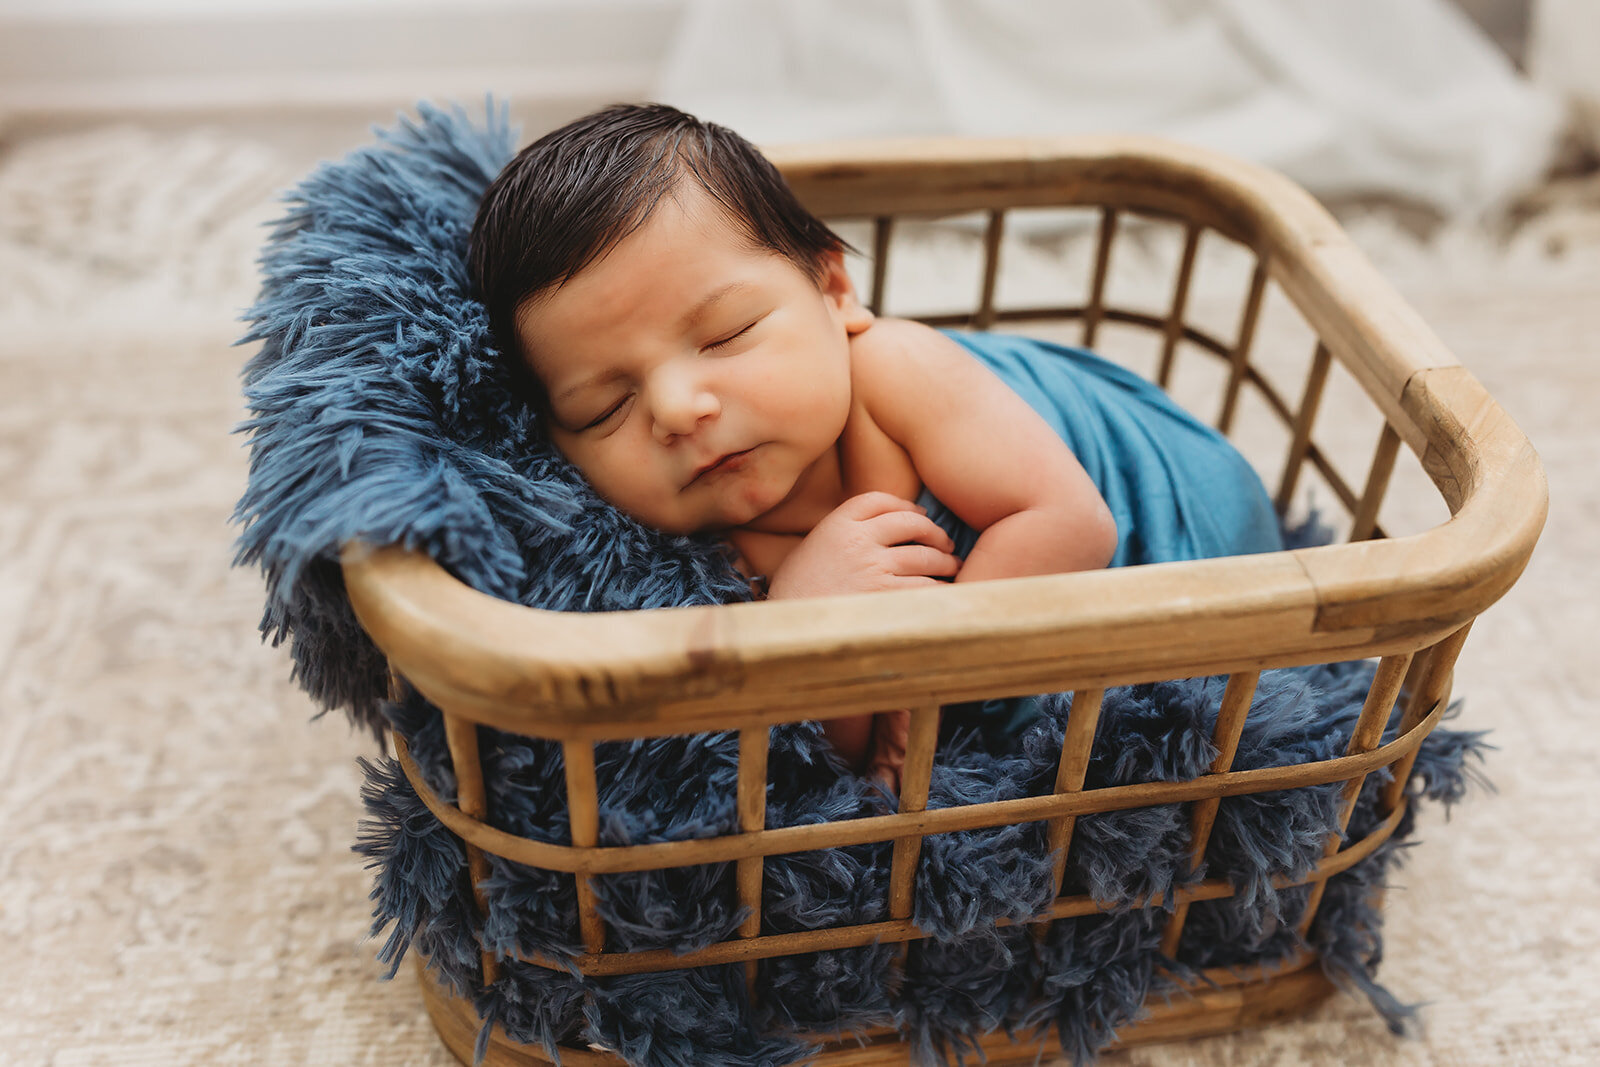 Babu boy with beautiful black hair sleeping in a basket